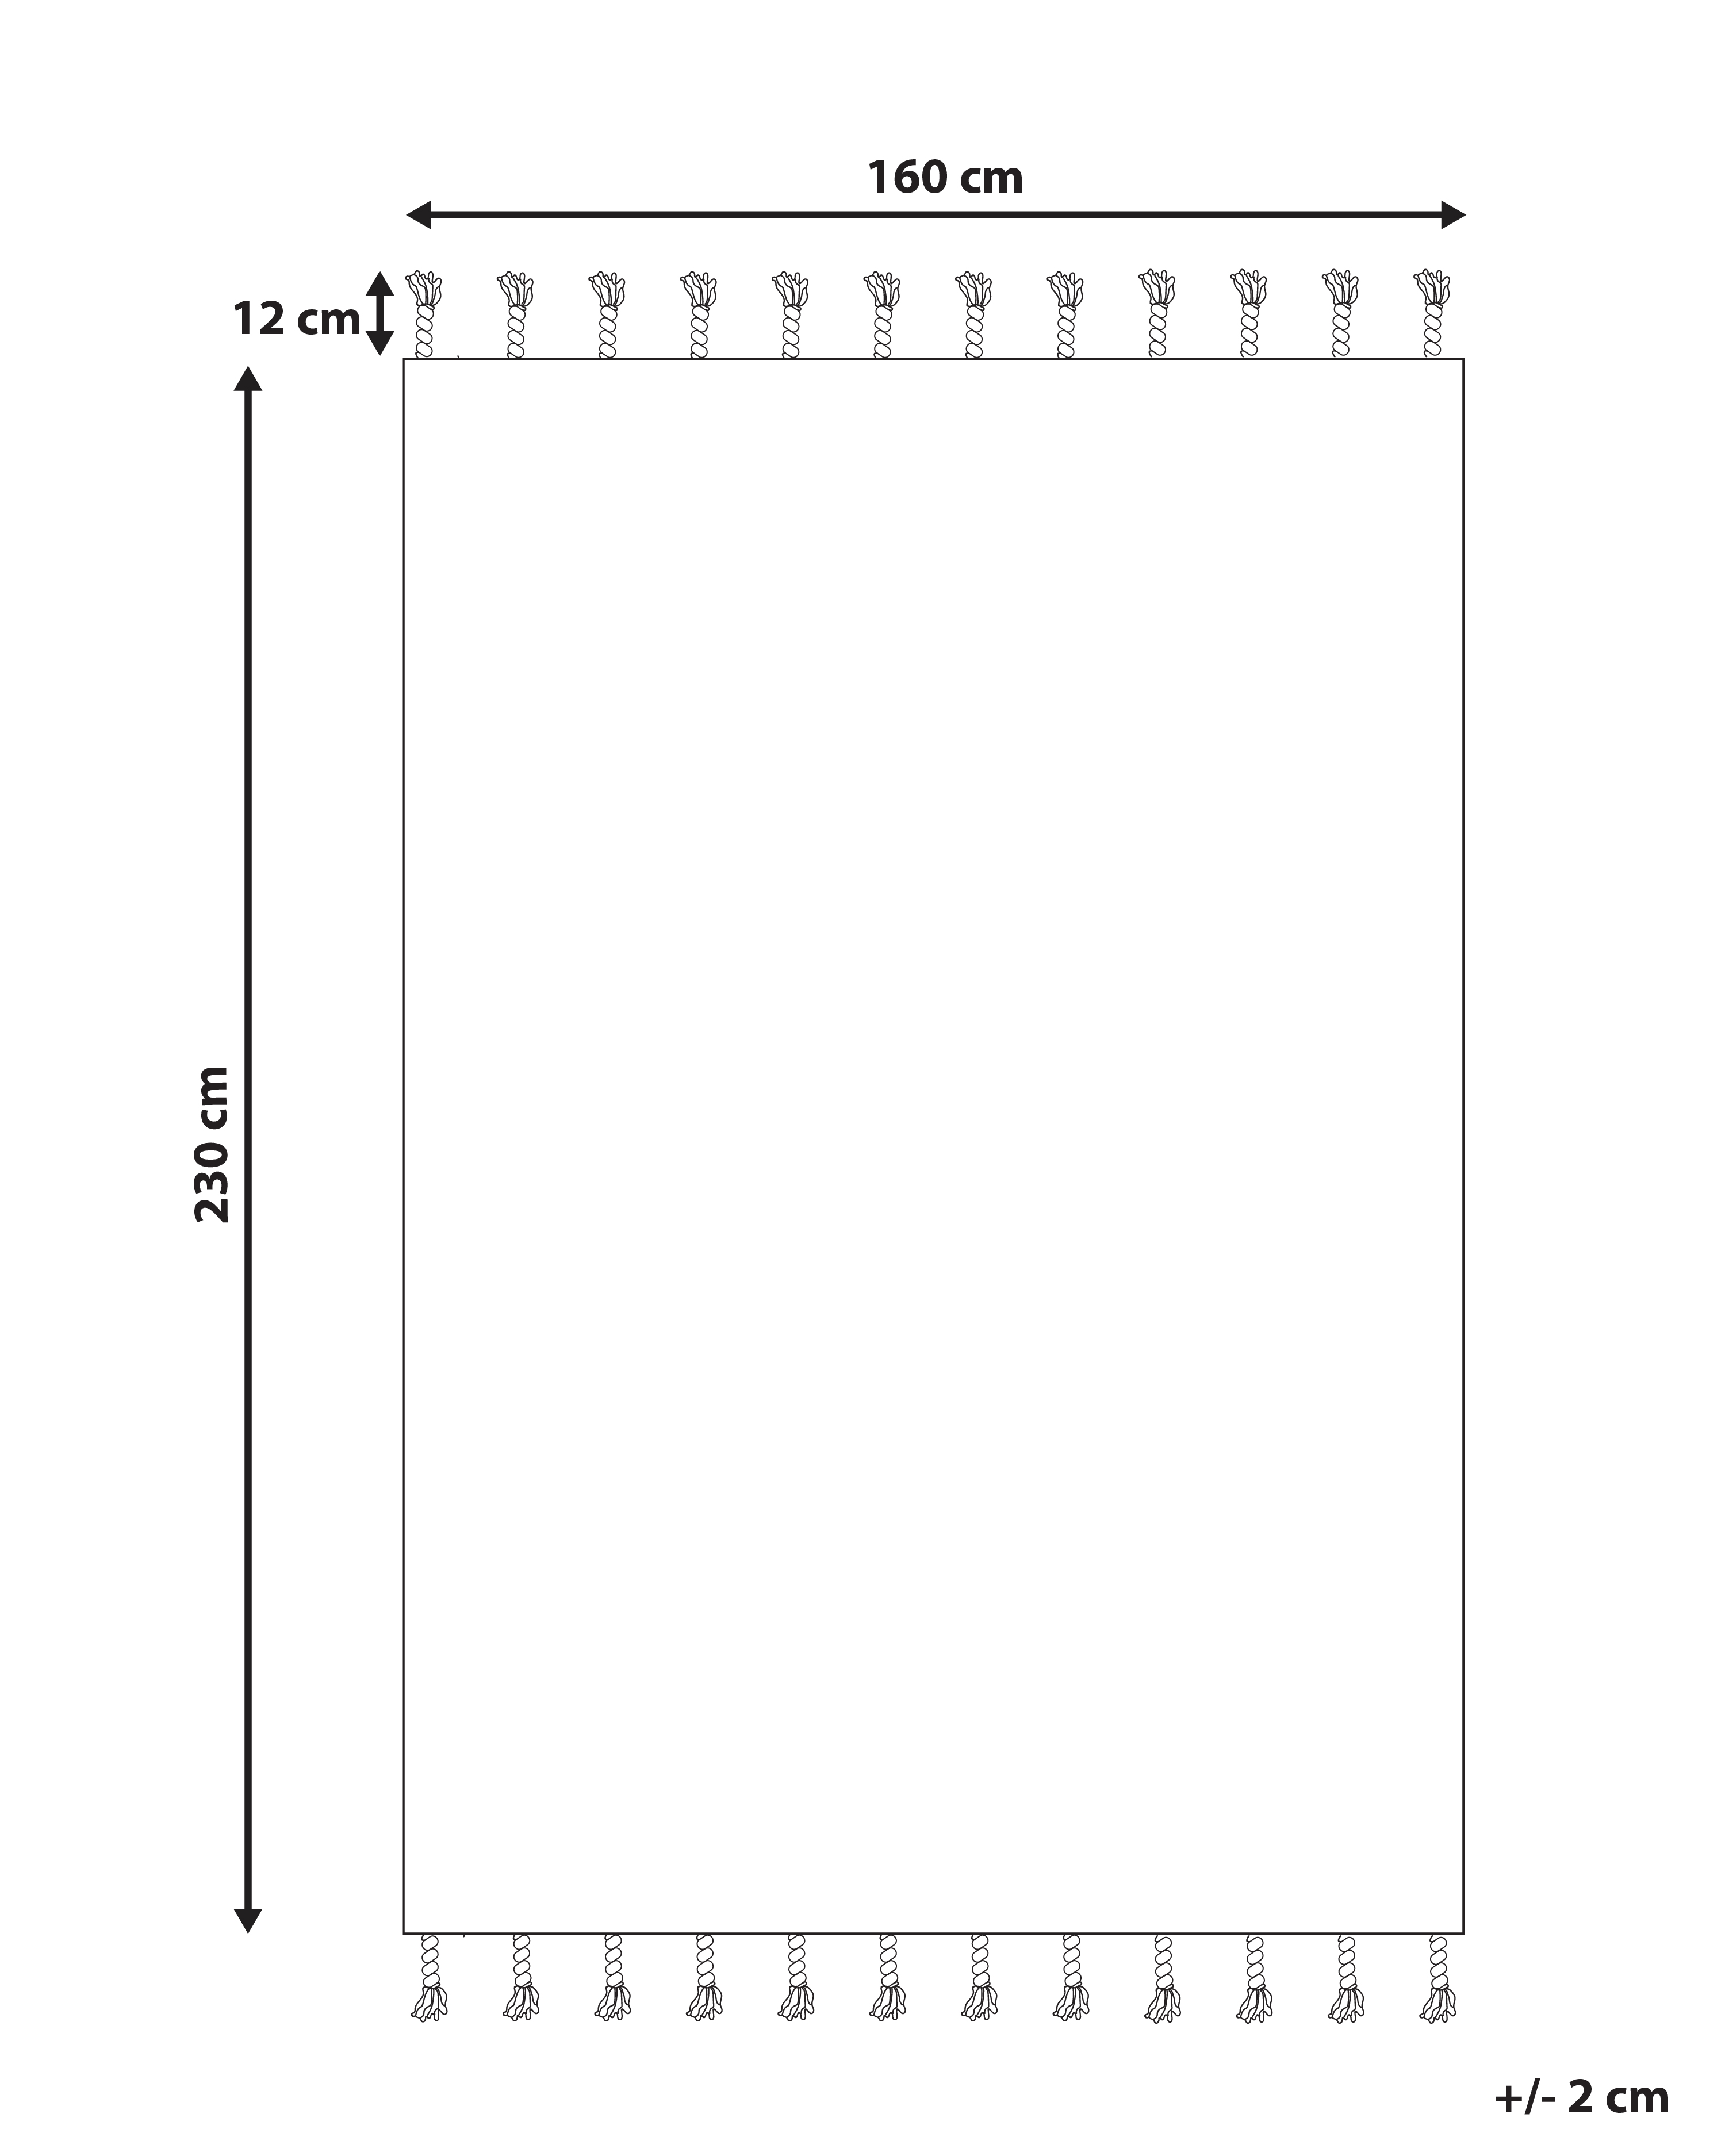 Outdoor Teppich hellgrau / weiß 160 x 230 cm Streifenmuster Kurzflor BADEMLI_846562